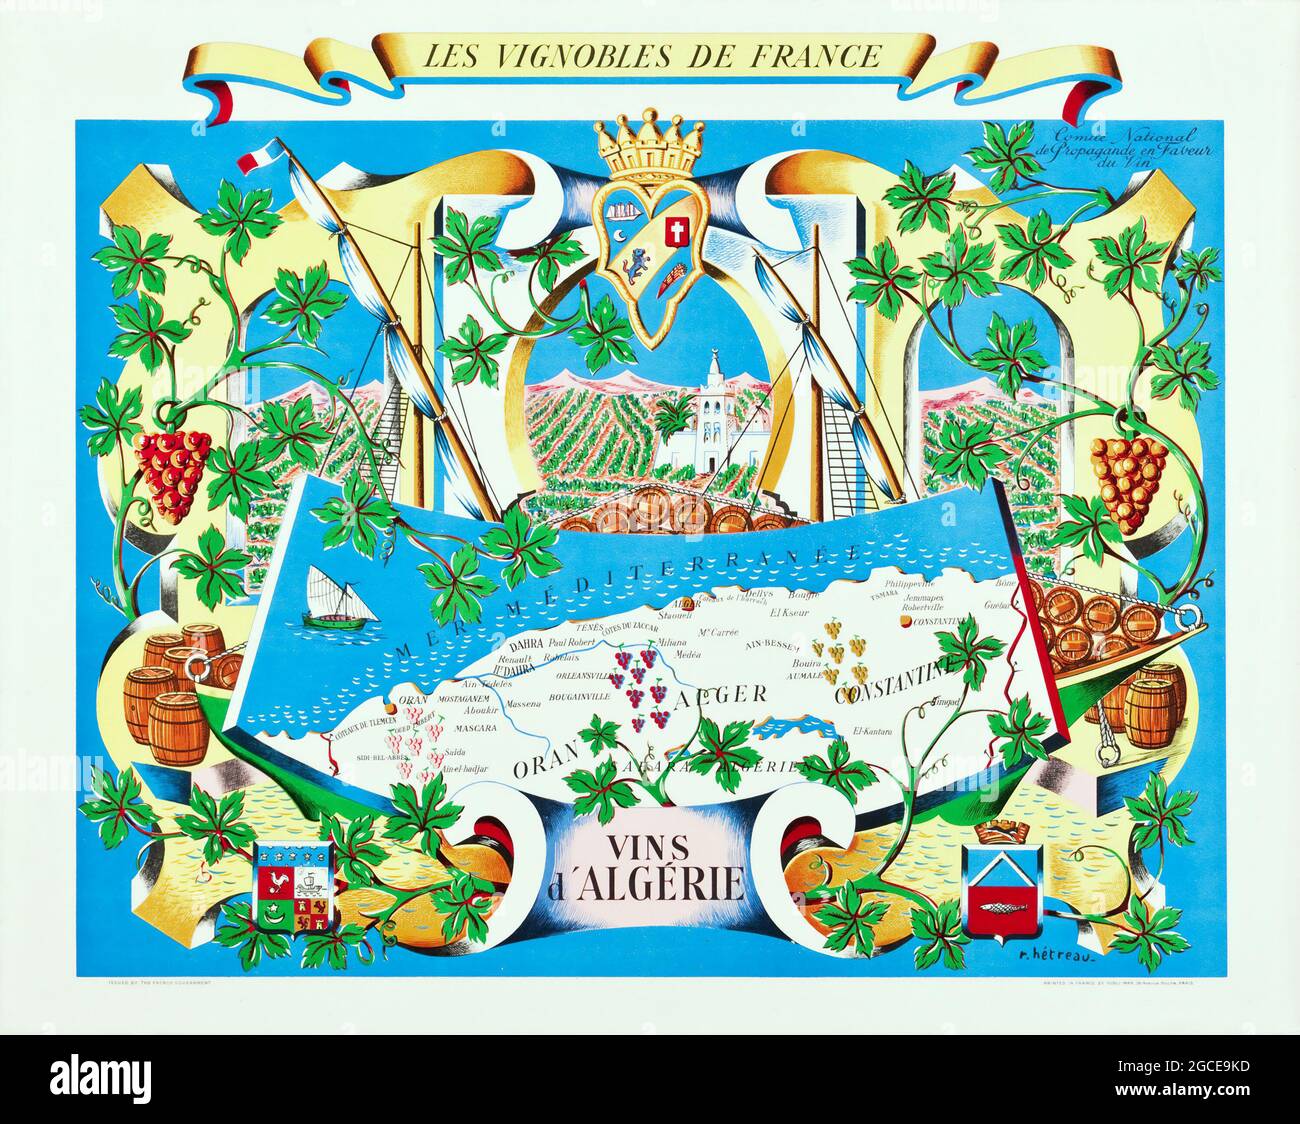 Régions viticoles françaises (Comite National de Propalande en Faveur du vin, 1954) vins d'Algerie. Les vignobles de France. Banque D'Images